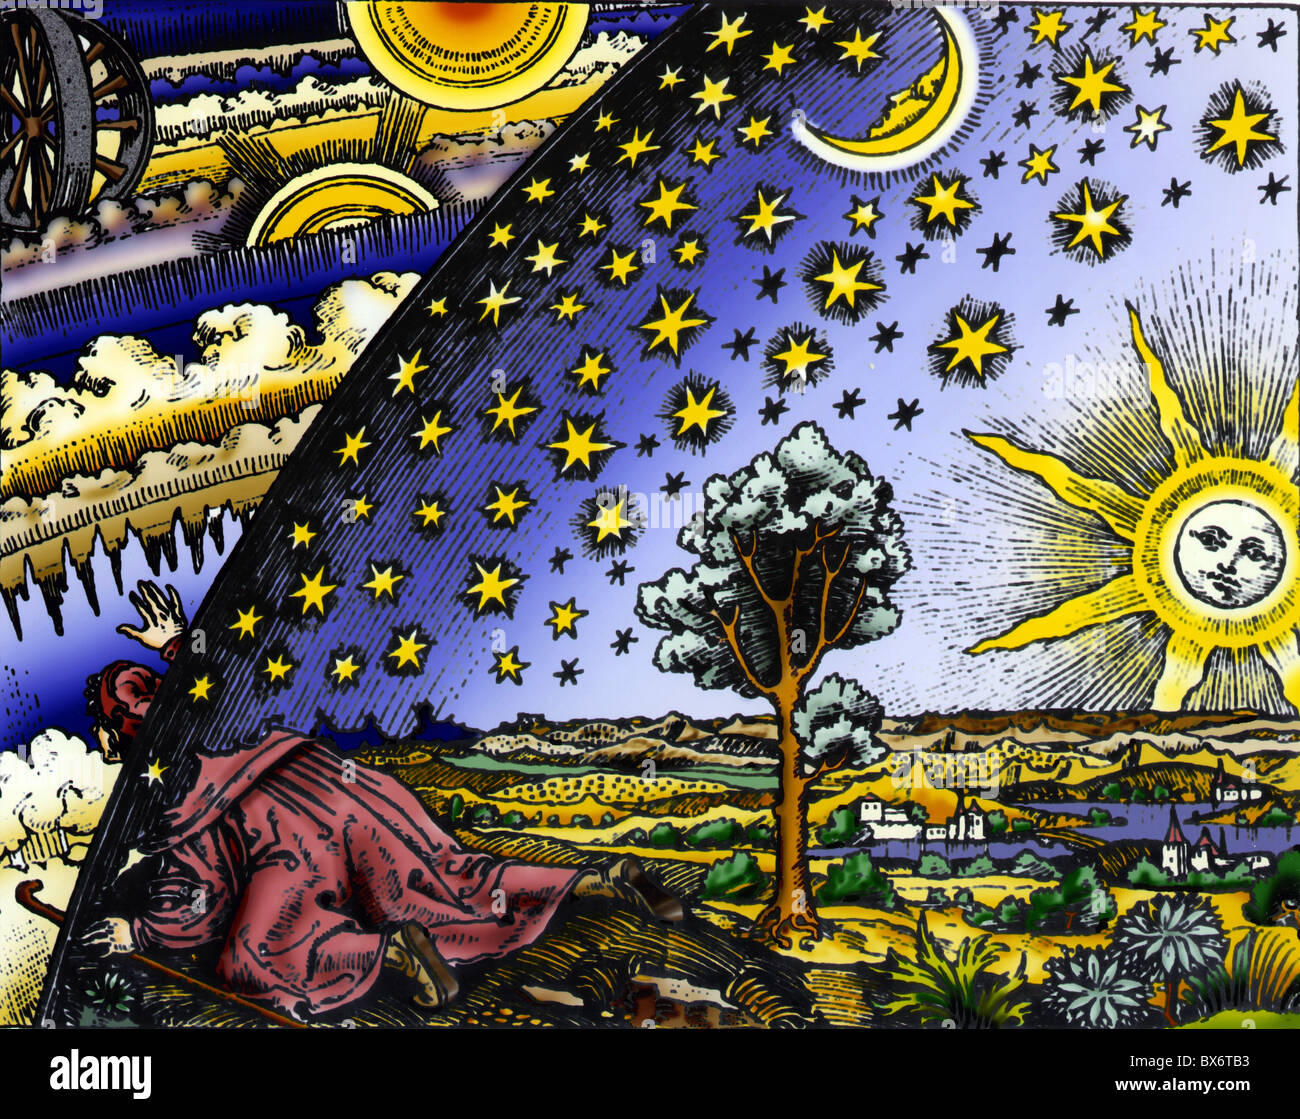 astronomía, imaginación del mundo, 'una mirada al cosmos desconocido', artista desconocido, siglo 15 / 16, coloreado, Derechos adicionales-Clearences-no disponible Foto de stock